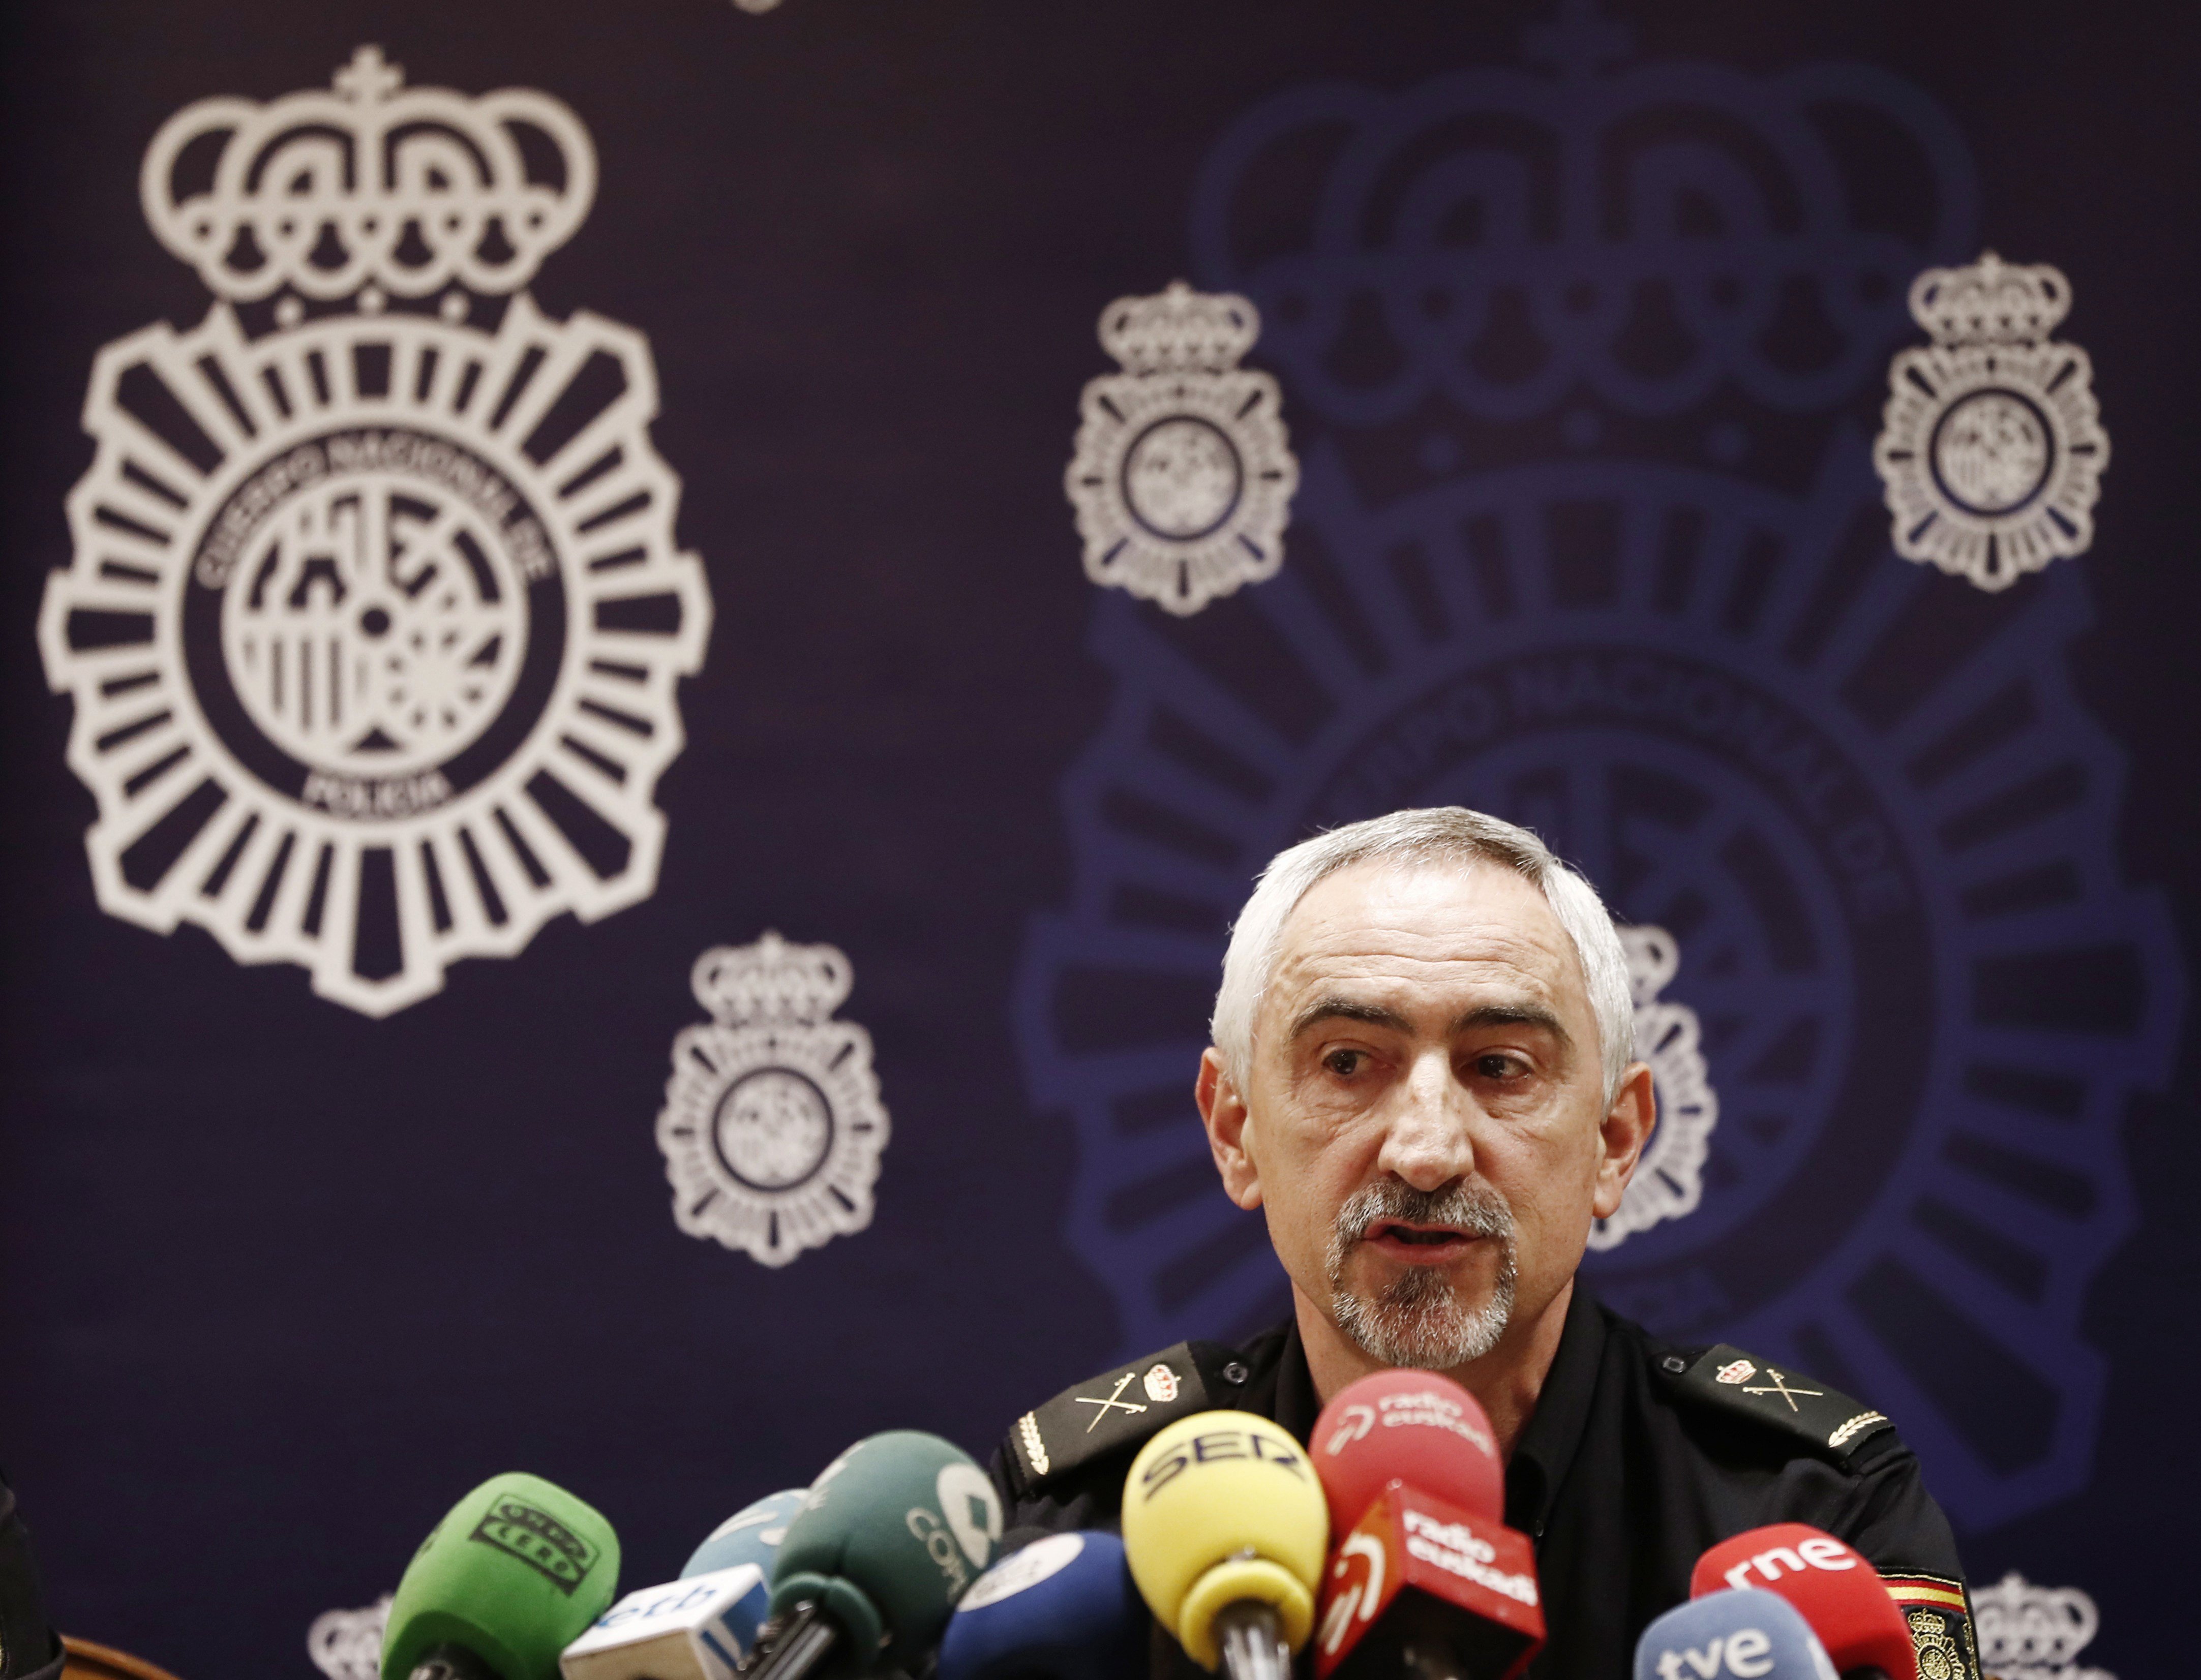 Dimite el jefe de policía en Navarra por insultos a políticos en Twitter